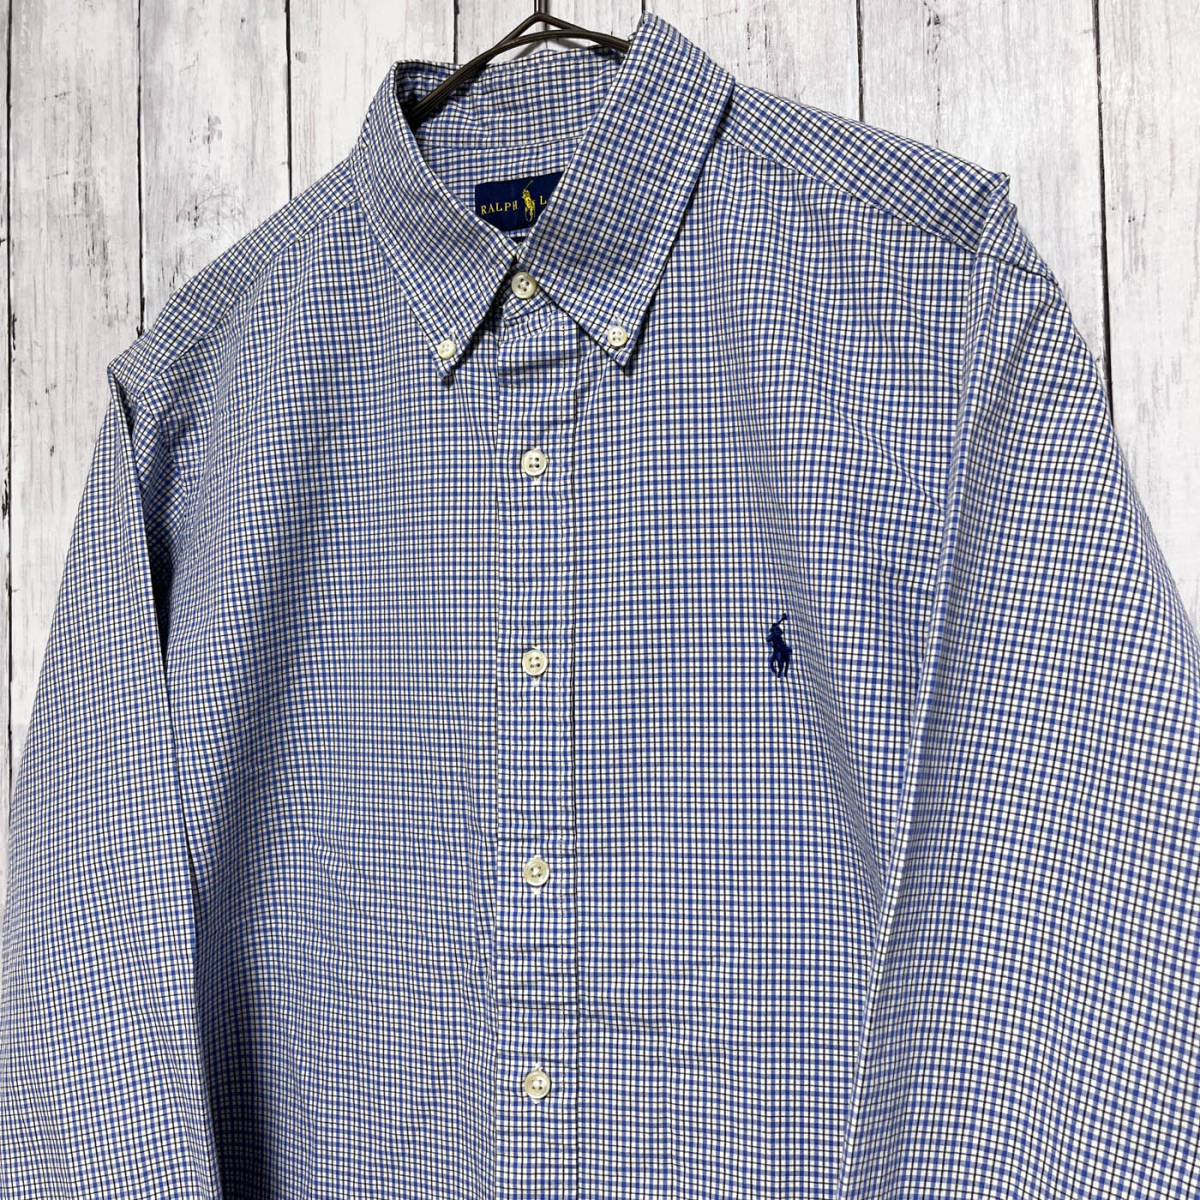 ラルフローレン Ralph Lauren CLASSIC FIT チェックシャツ 長袖シャツ メンズ ワンポイント コットン100% サイズ16 Lサイズ 5‐308_画像3